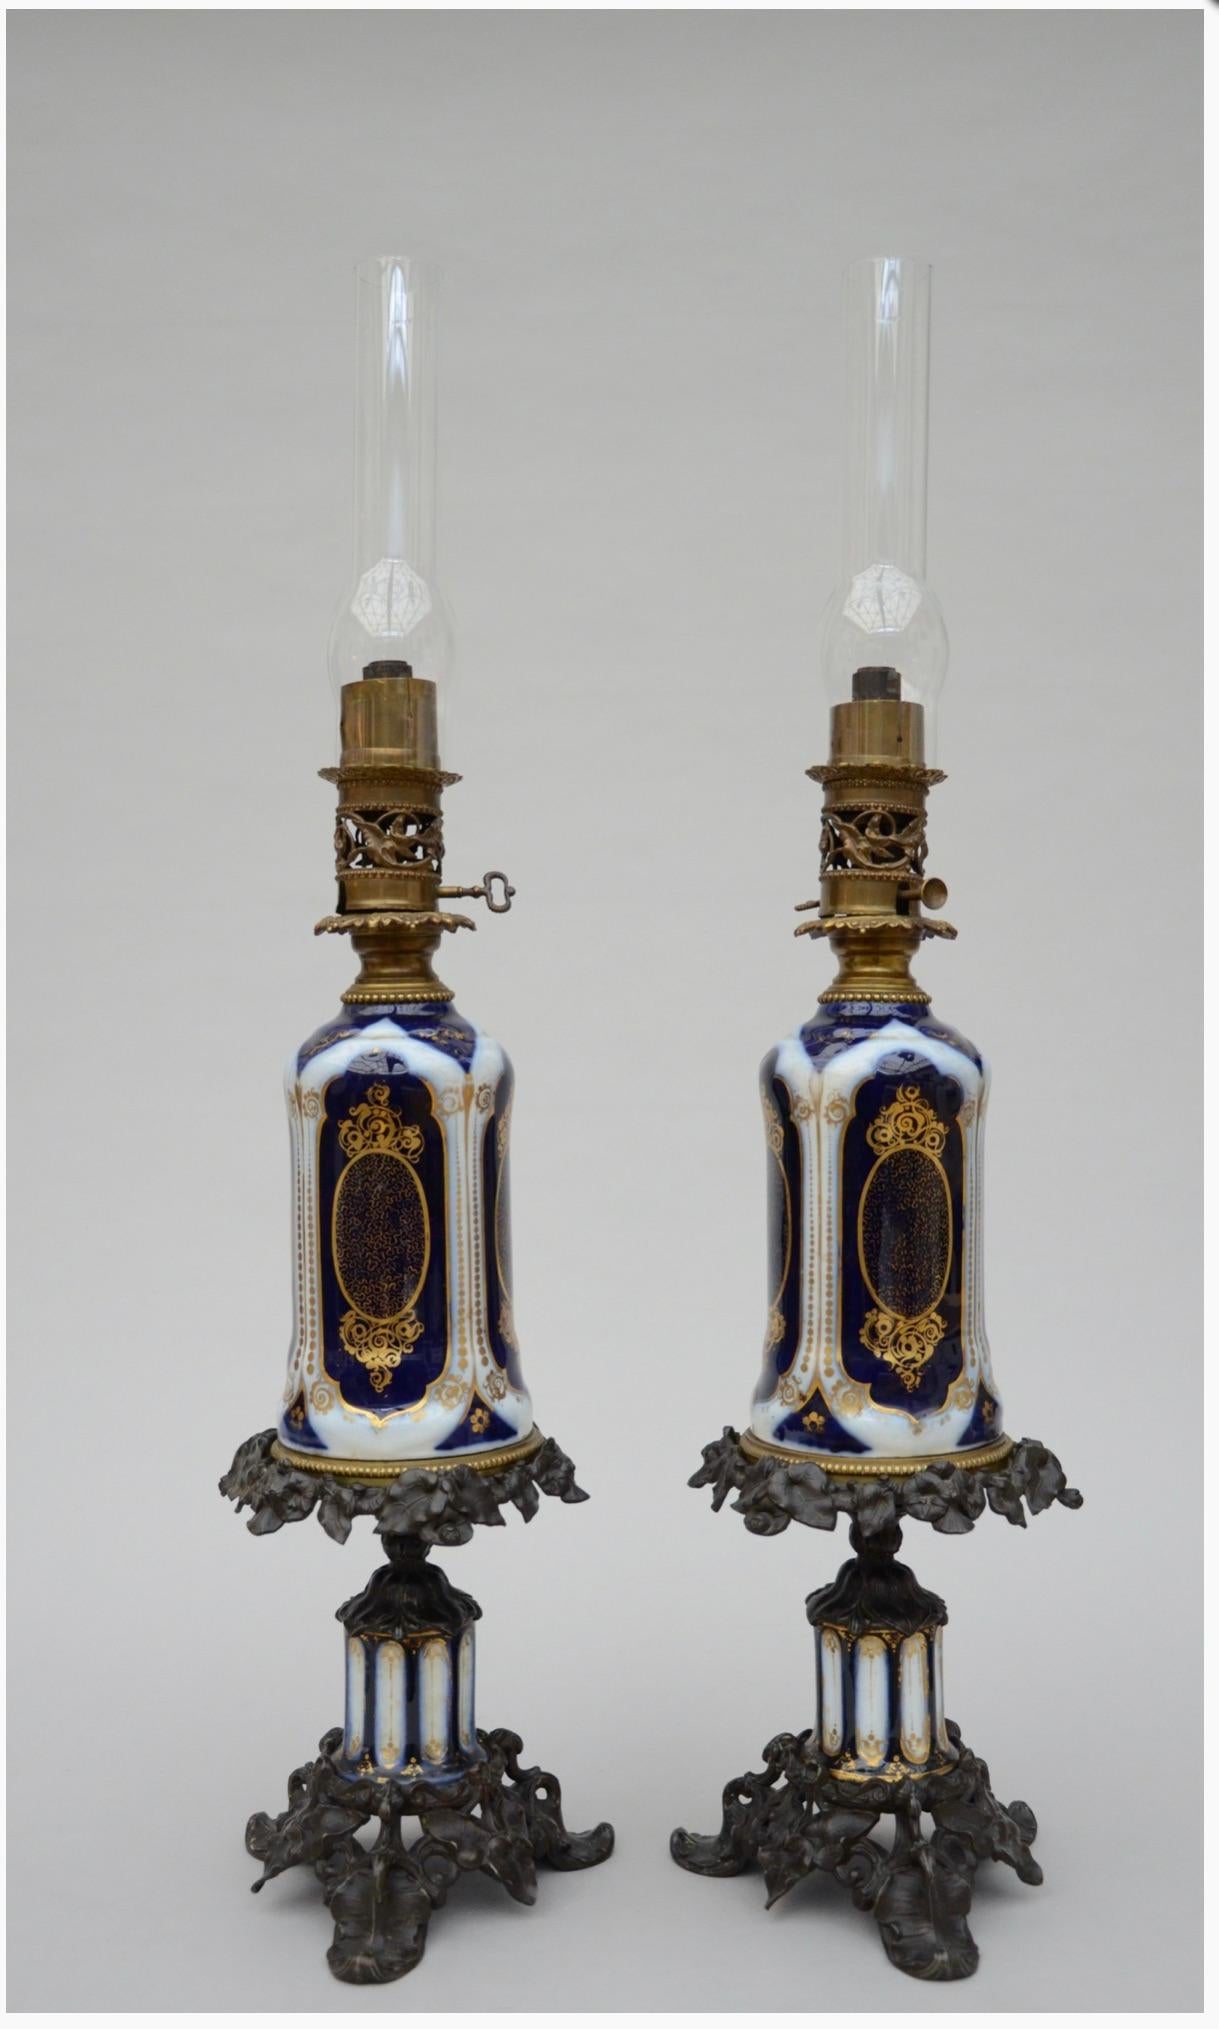 Paire de lampes à huile Bayeux avec montures en bronze.

Paire de lampes à huile anciennes en porcelaine de Bayeux peinte à la main.
Les couleurs utilisées sont typiques de la porcelaine de Bayeux.

Hauteur avec verre 33.8